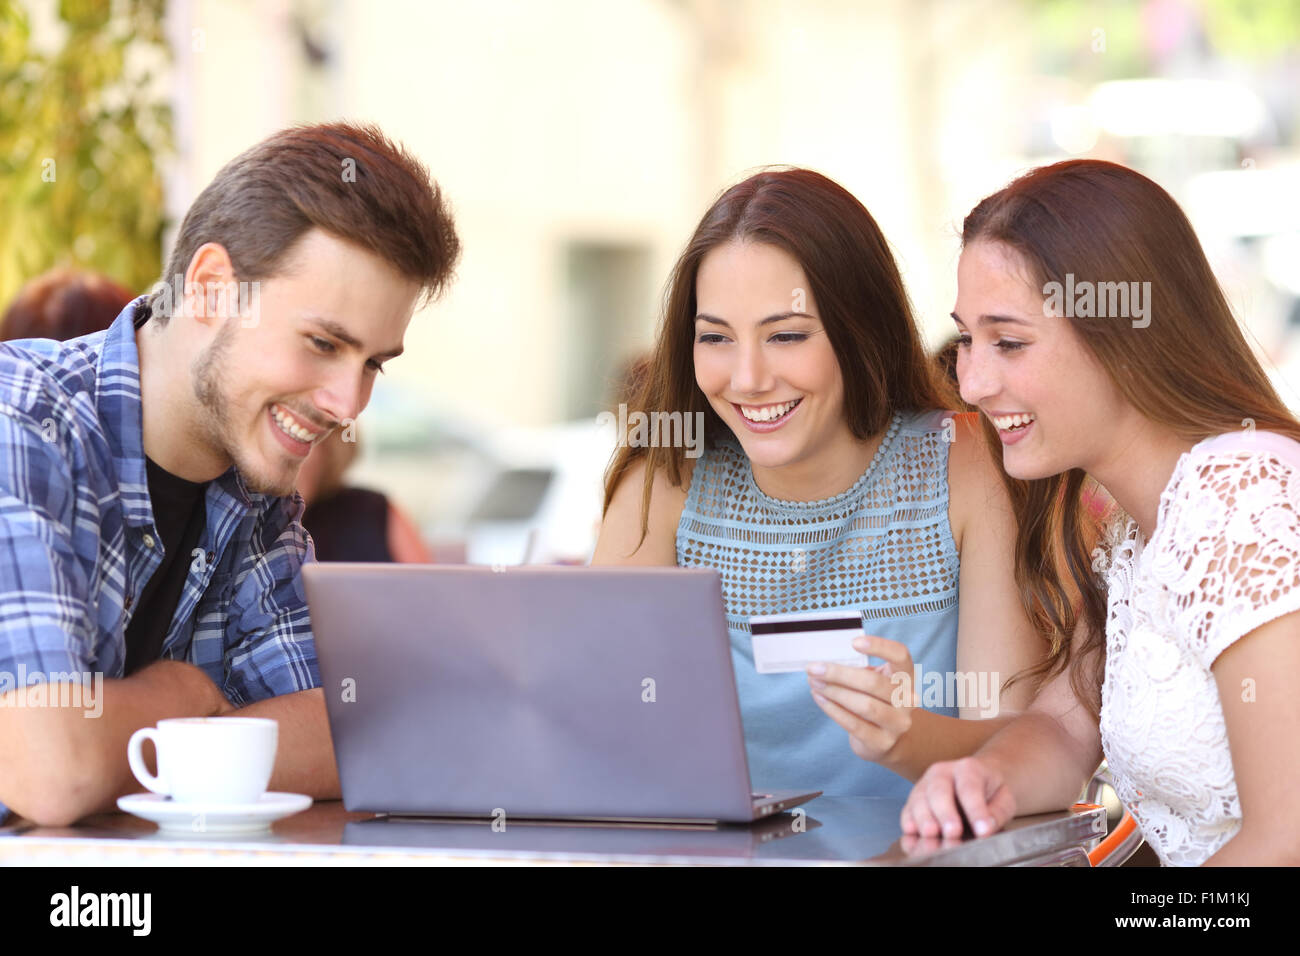 Tres amigos Felices compras en línea con una tarjeta de crédito y una computadora portátil en una tienda de café Foto de stock